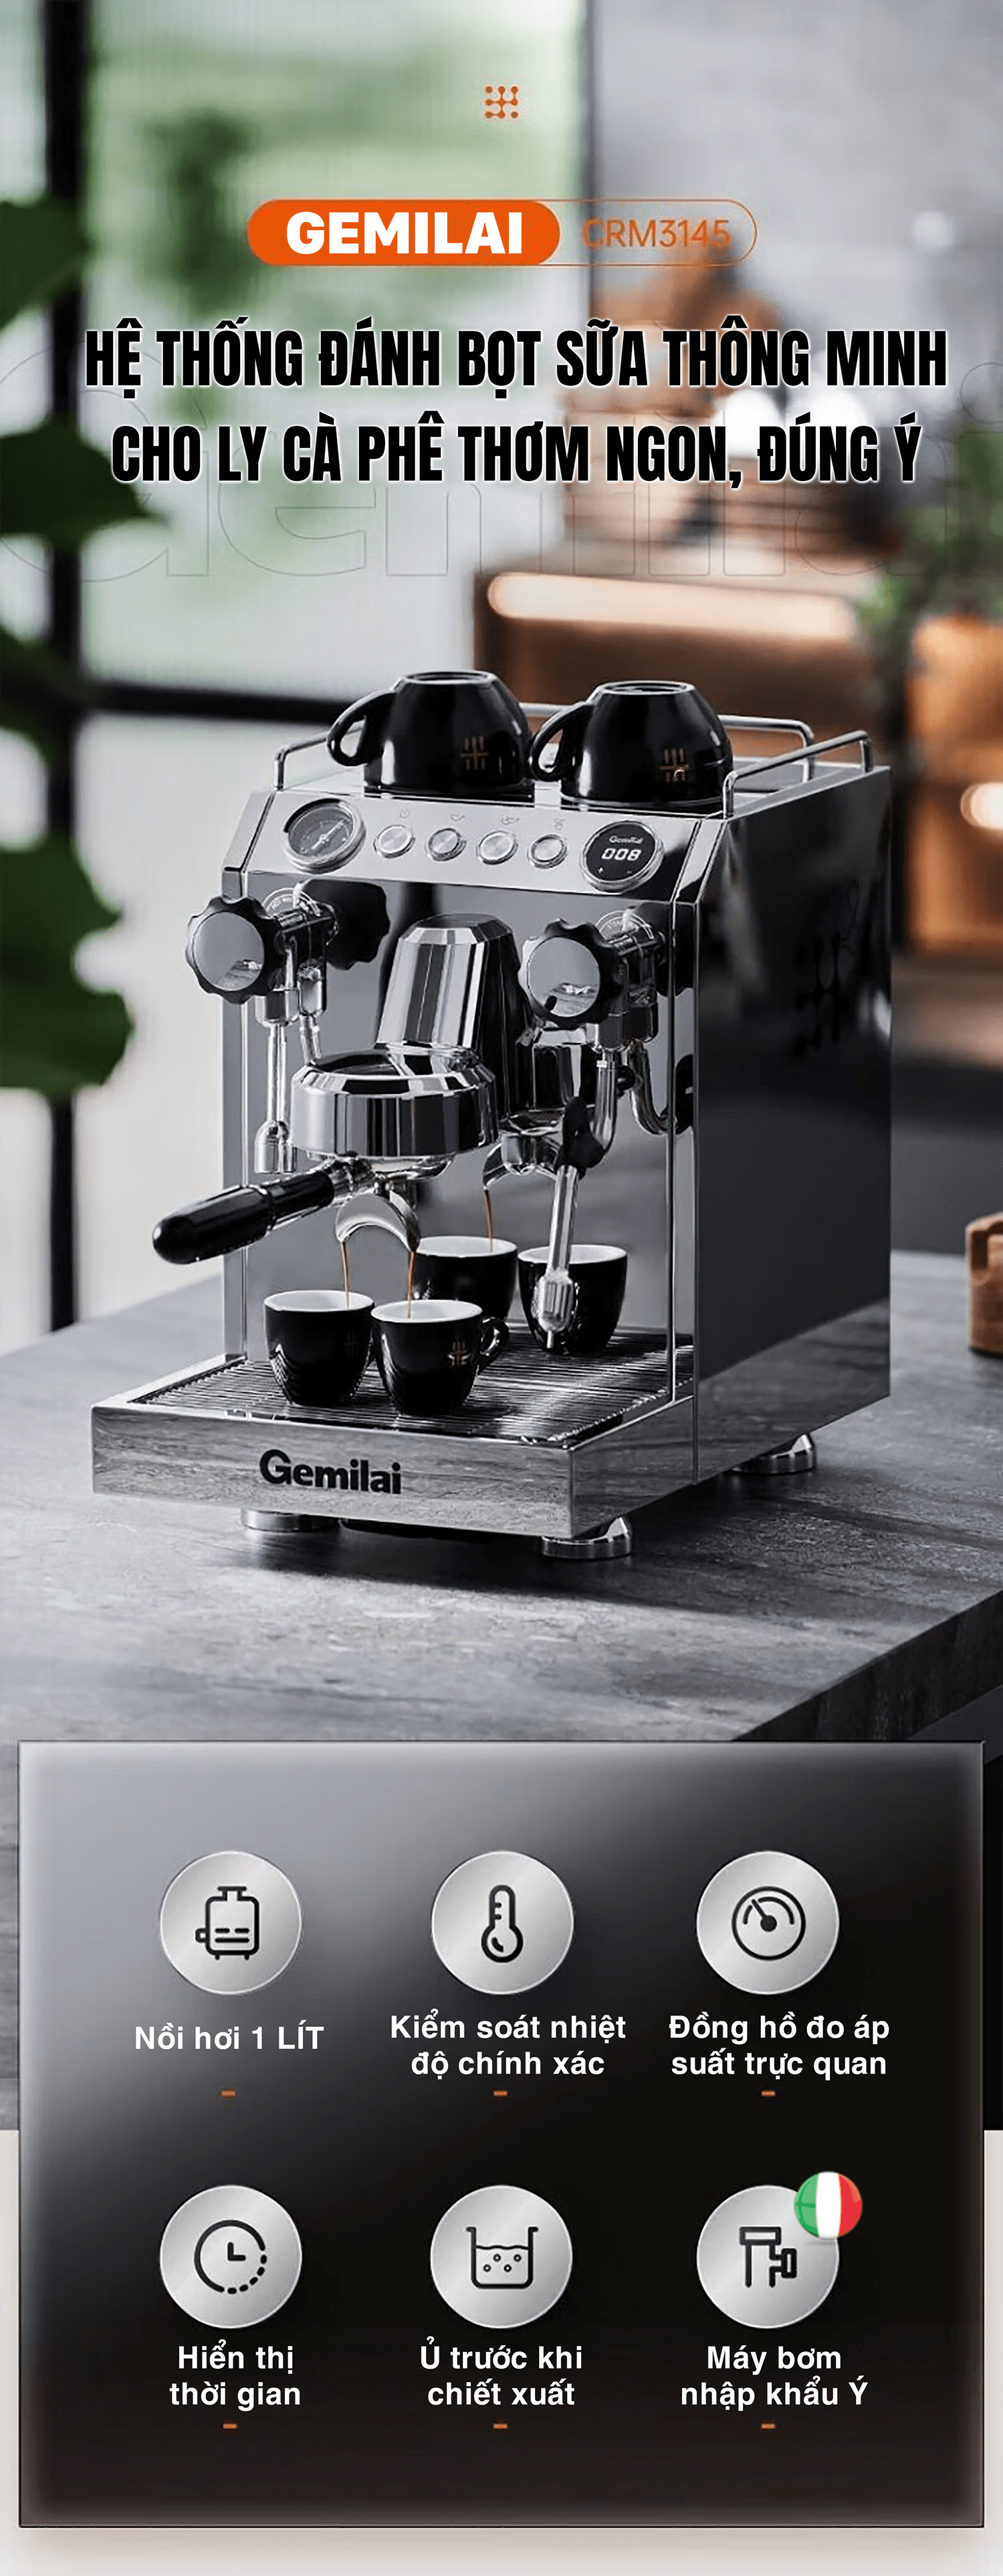 Máy pha cà phê GEMILAI CRM 3145